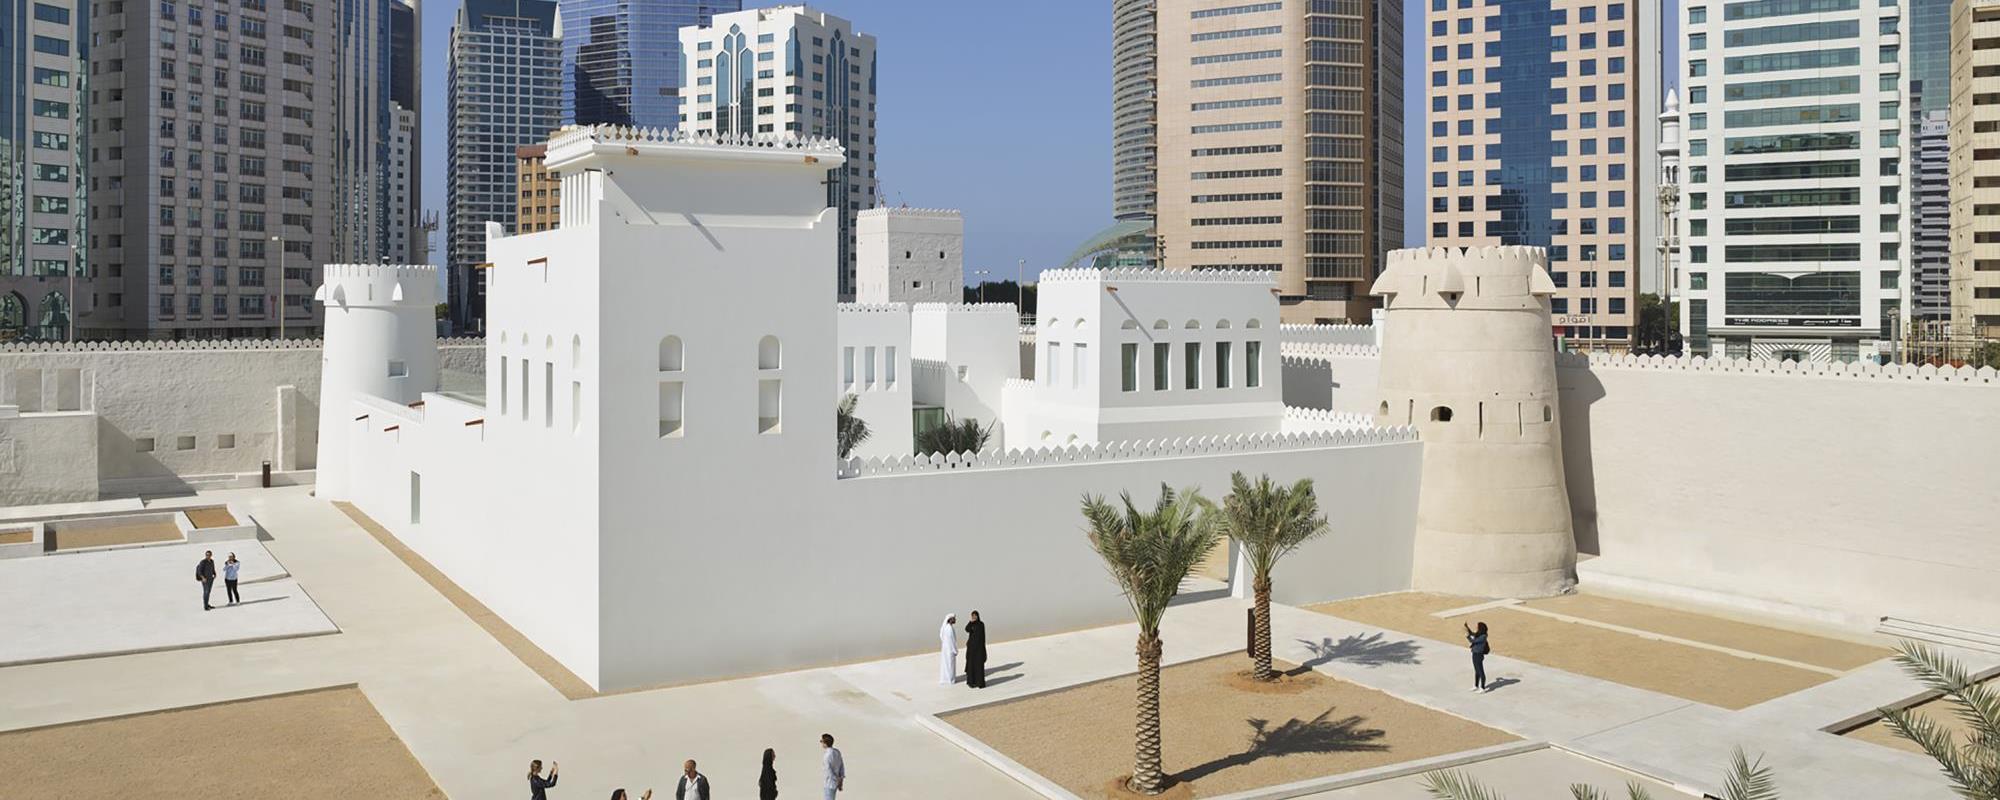 National monument of United Arab Emirates - Qasr Al Hosn Fort